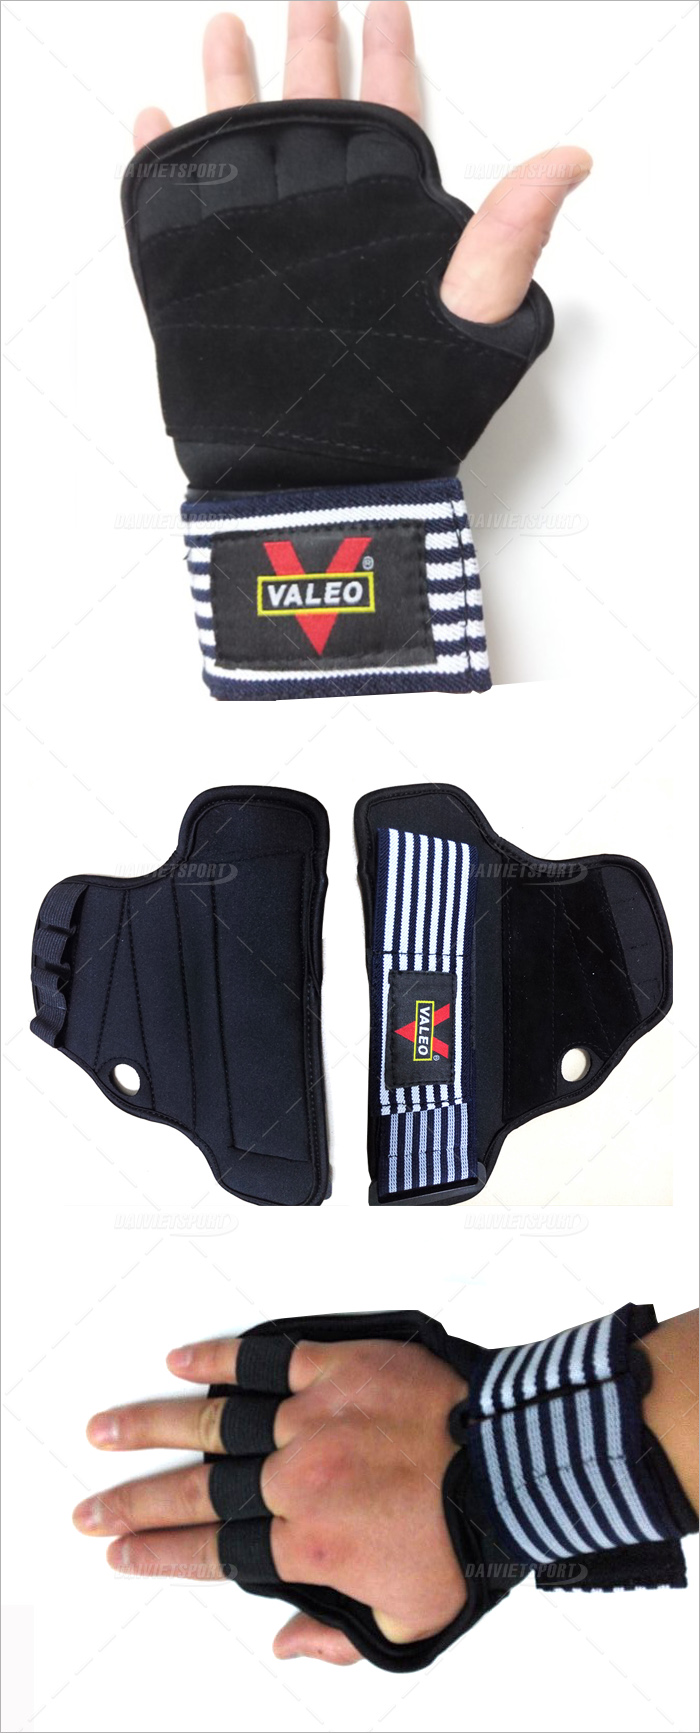  Găng bảo vệ lòng bàn tay Valeo thiết kế